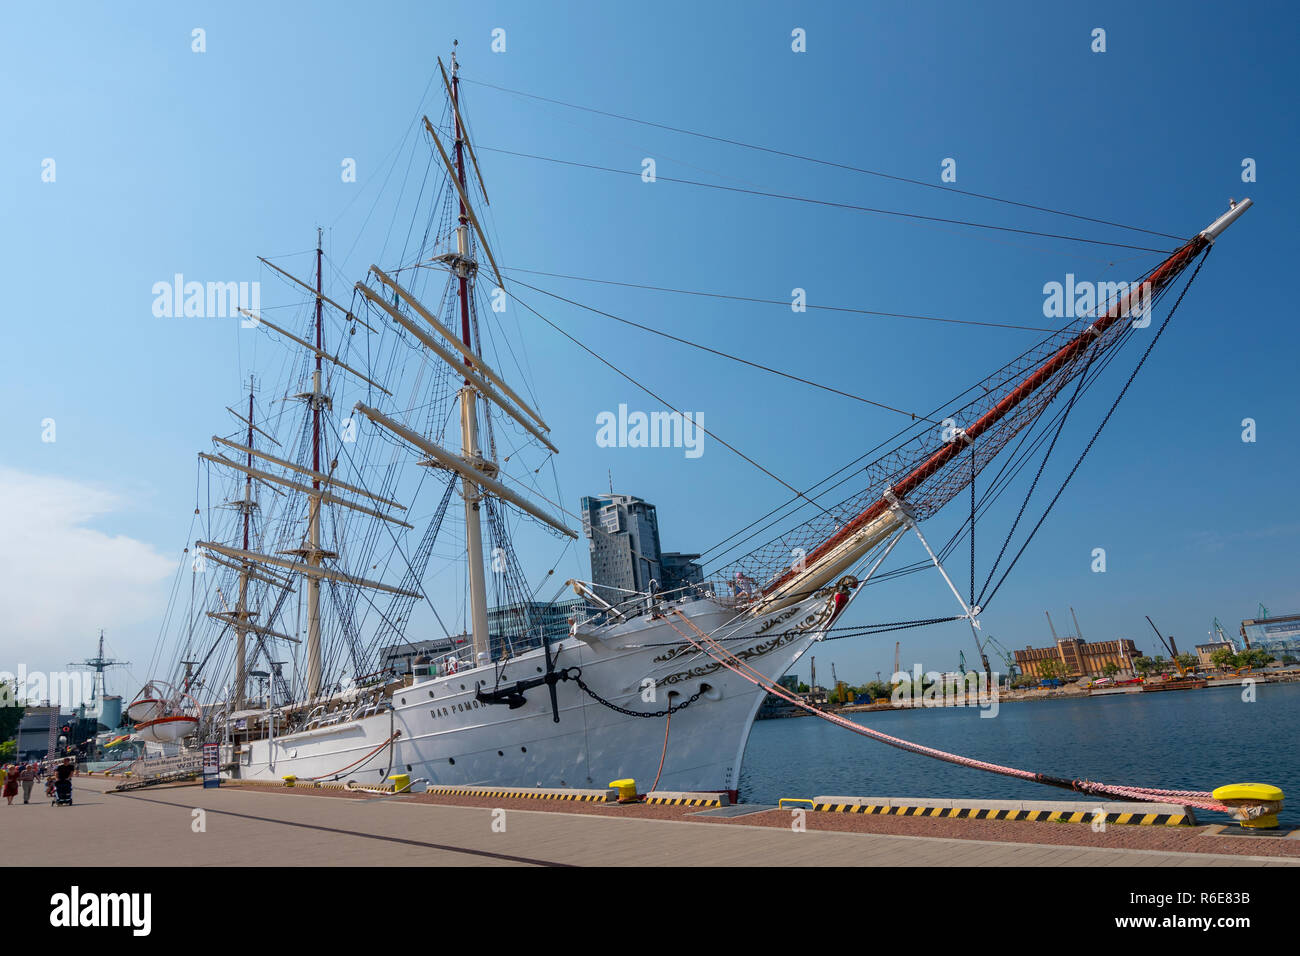 Segelschiff Dar Pomorza (Geschenk von Pommern) Museum im Hafen von Gdynia, Polen Stockfoto